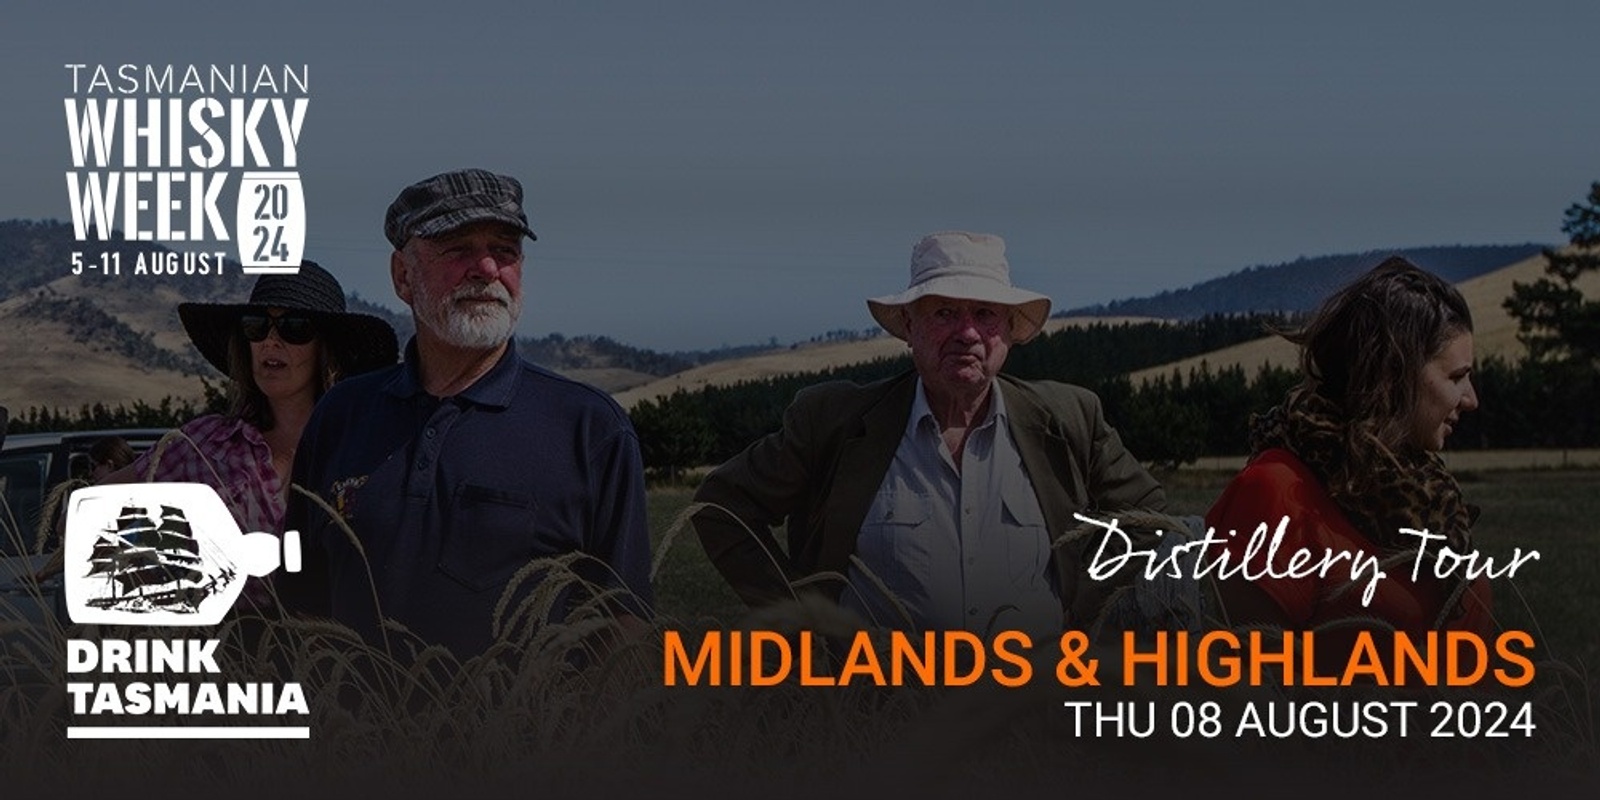 Banner image for Tas Whisky Week - Distillery Tour Midlands & Highlands